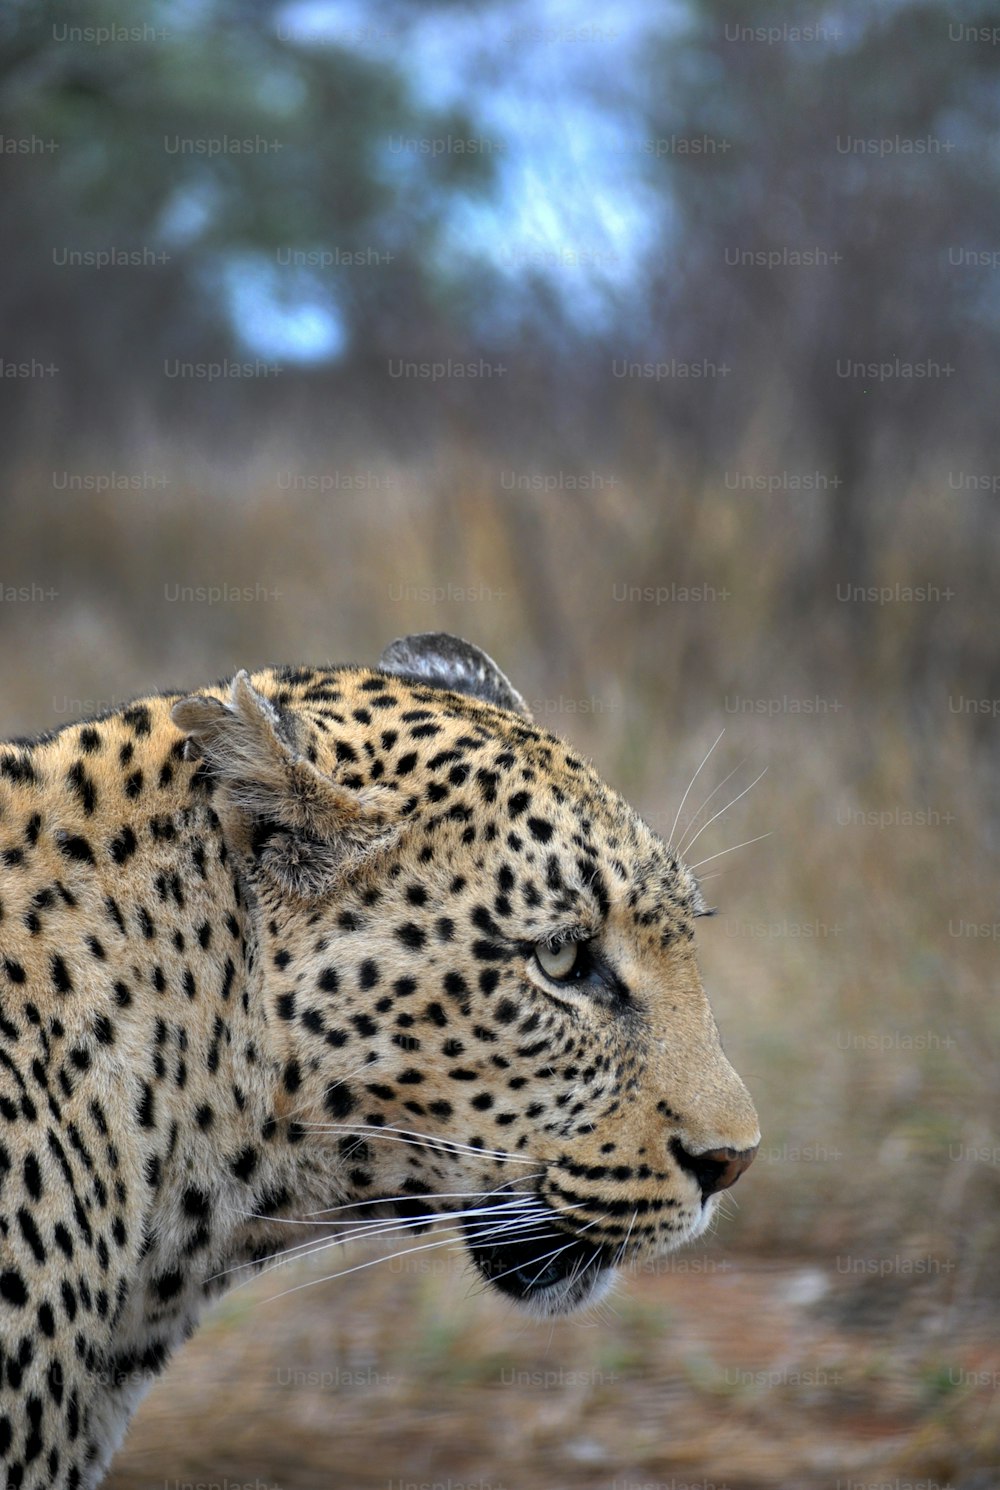 a close up of a leopard in a field